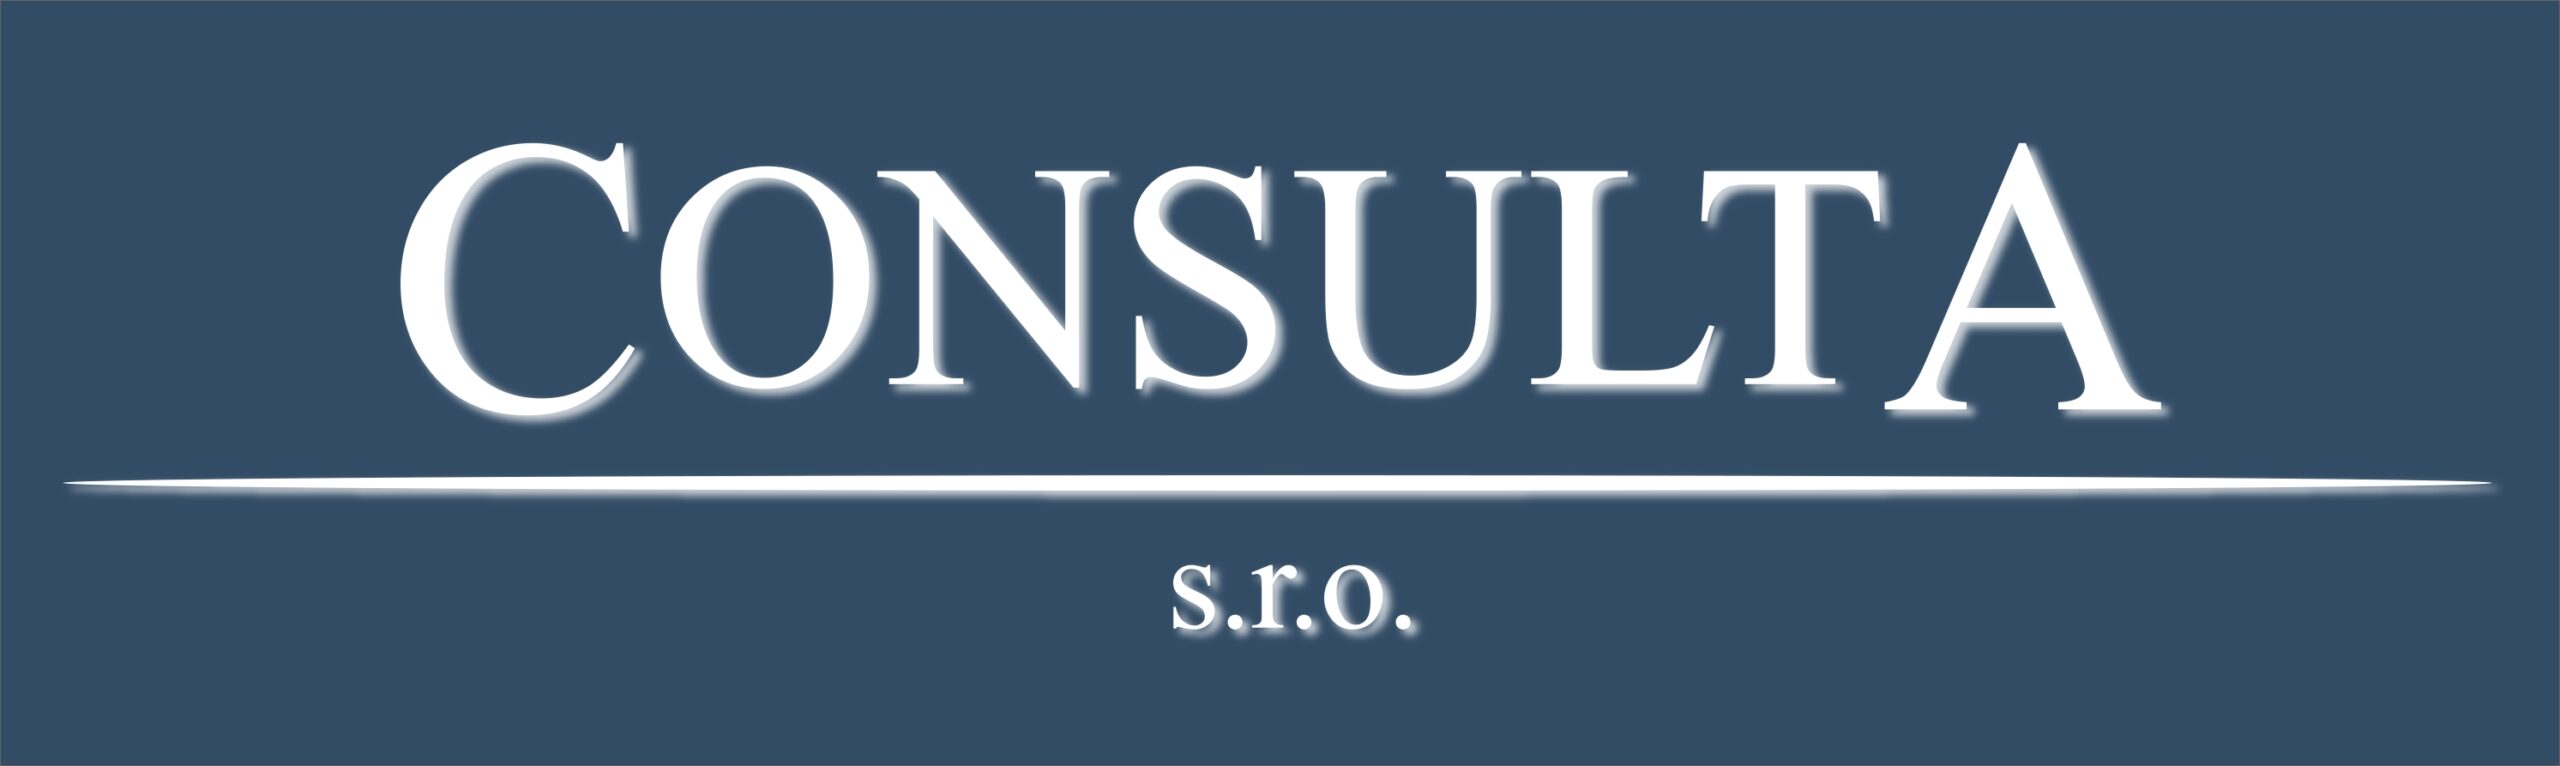 Consulta-logo